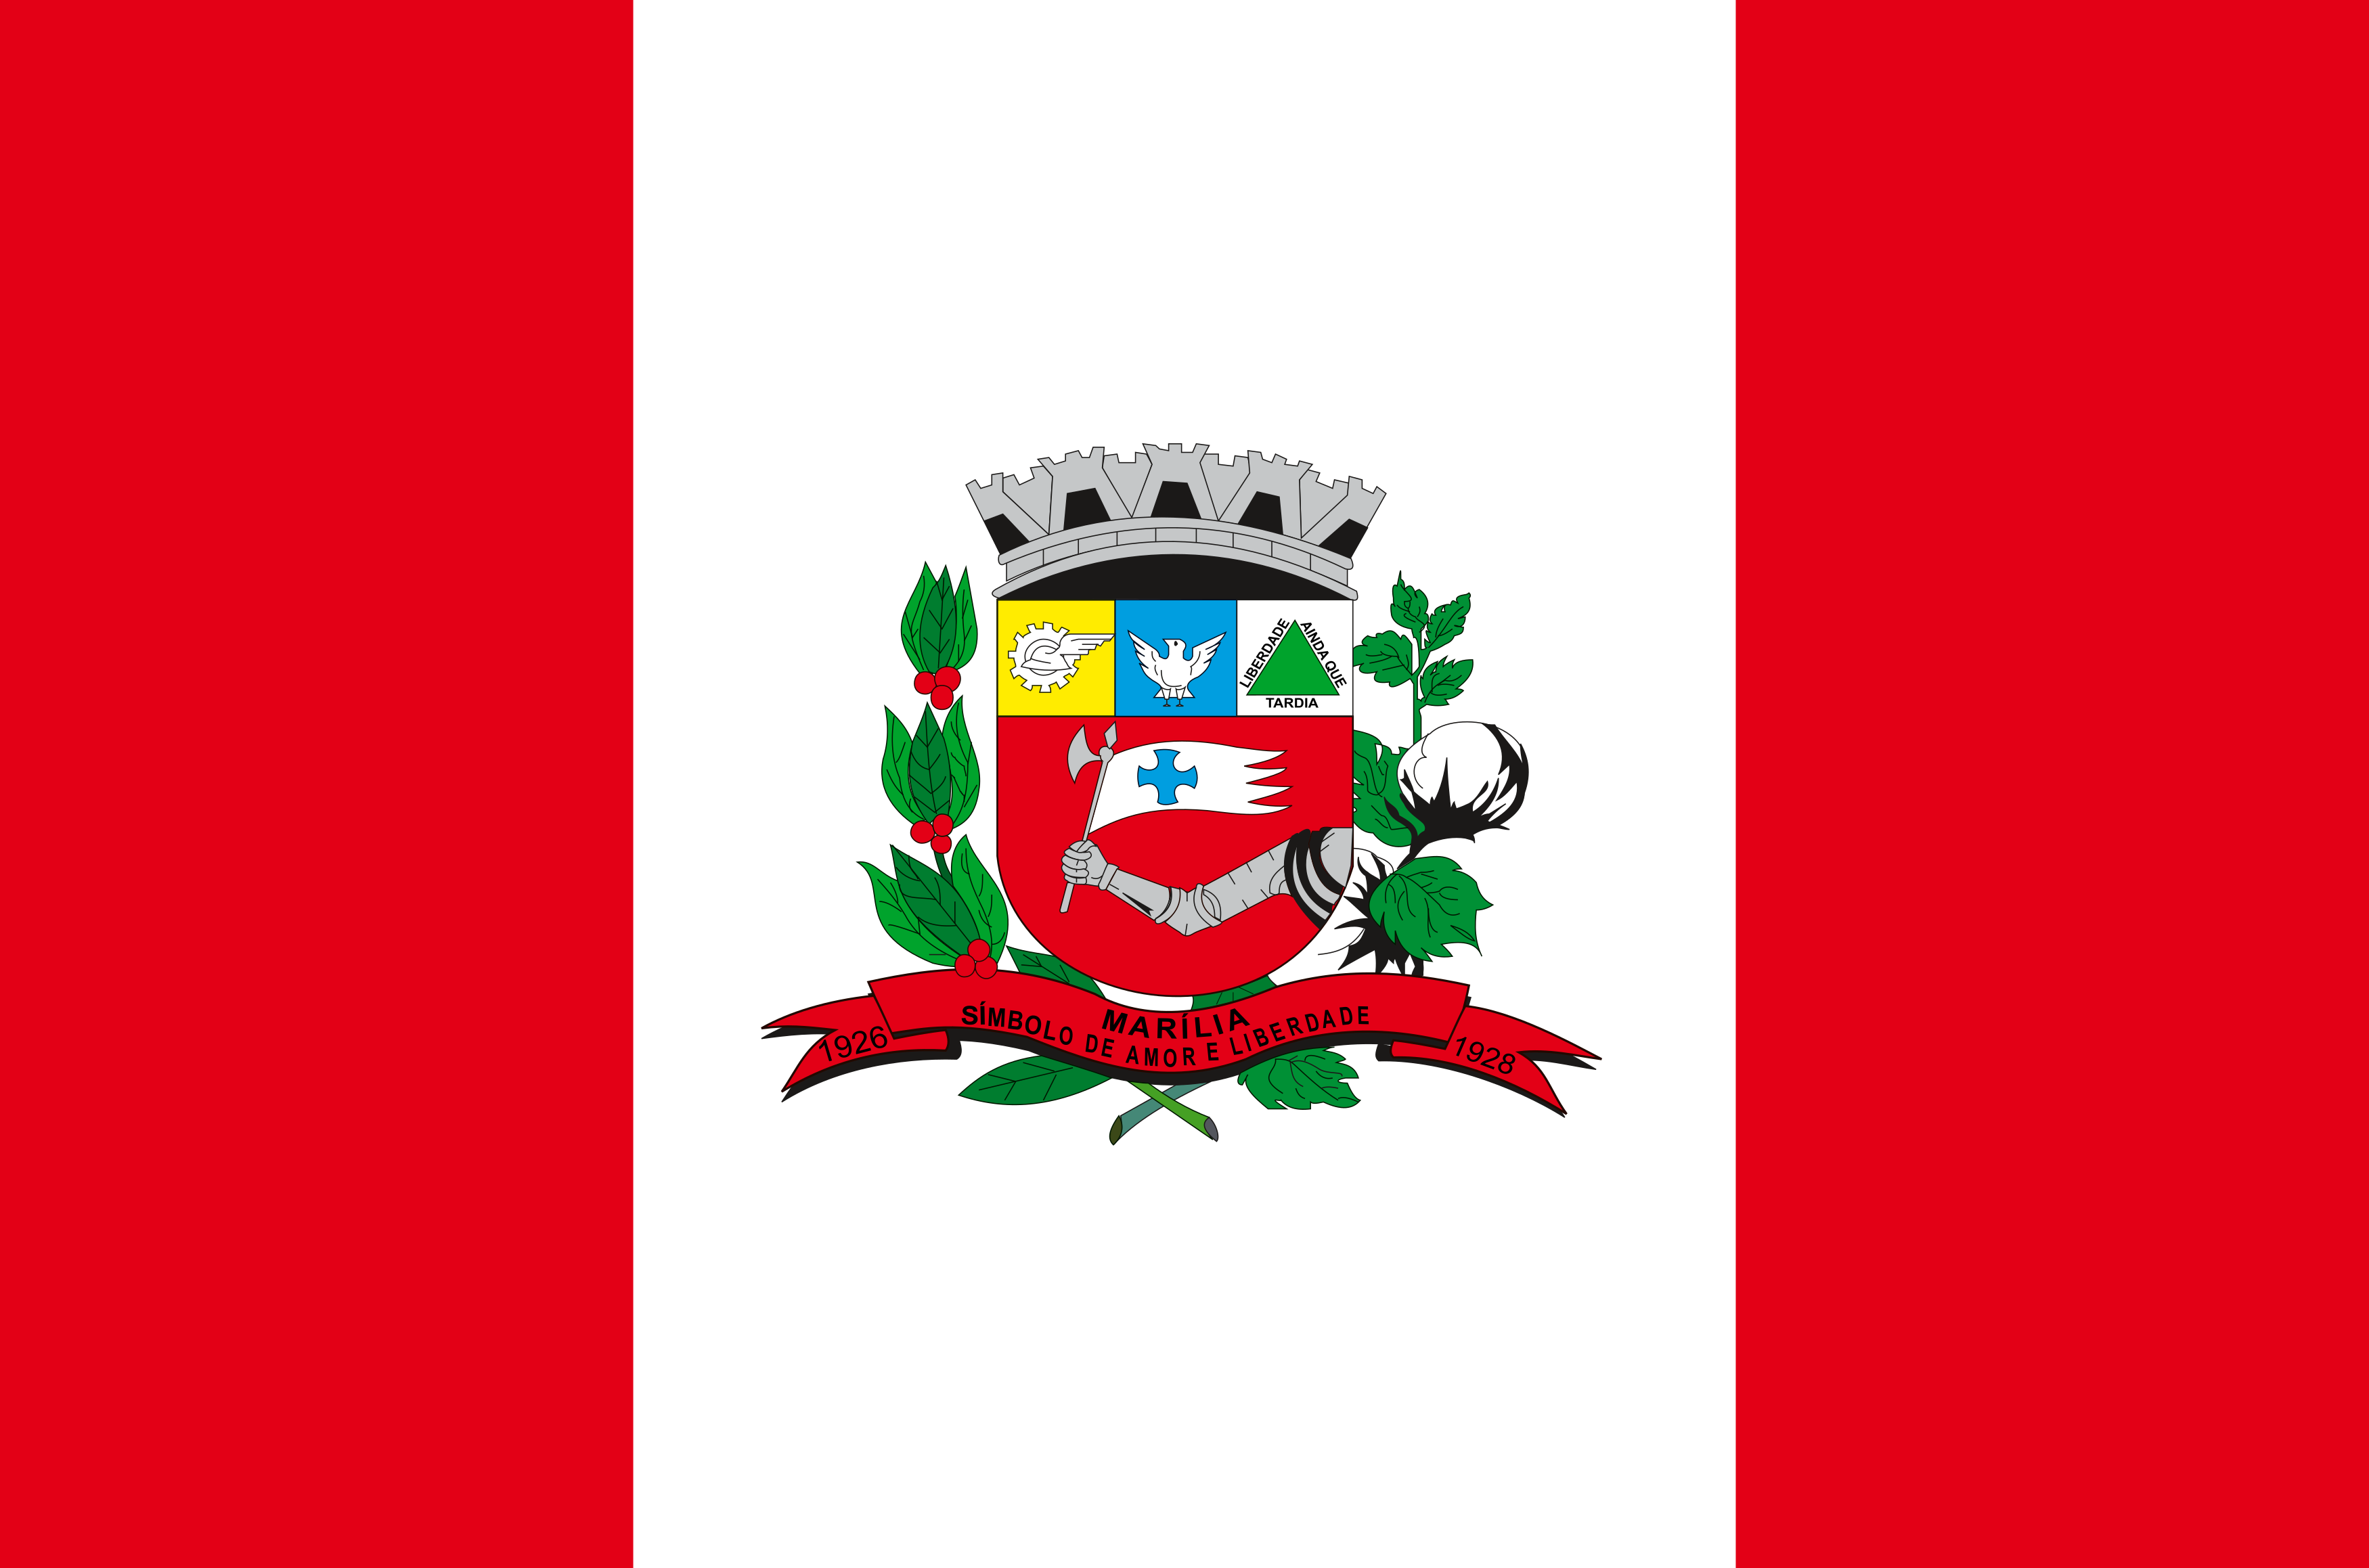 bandeira marilia sp - Bandeira de Marília SP